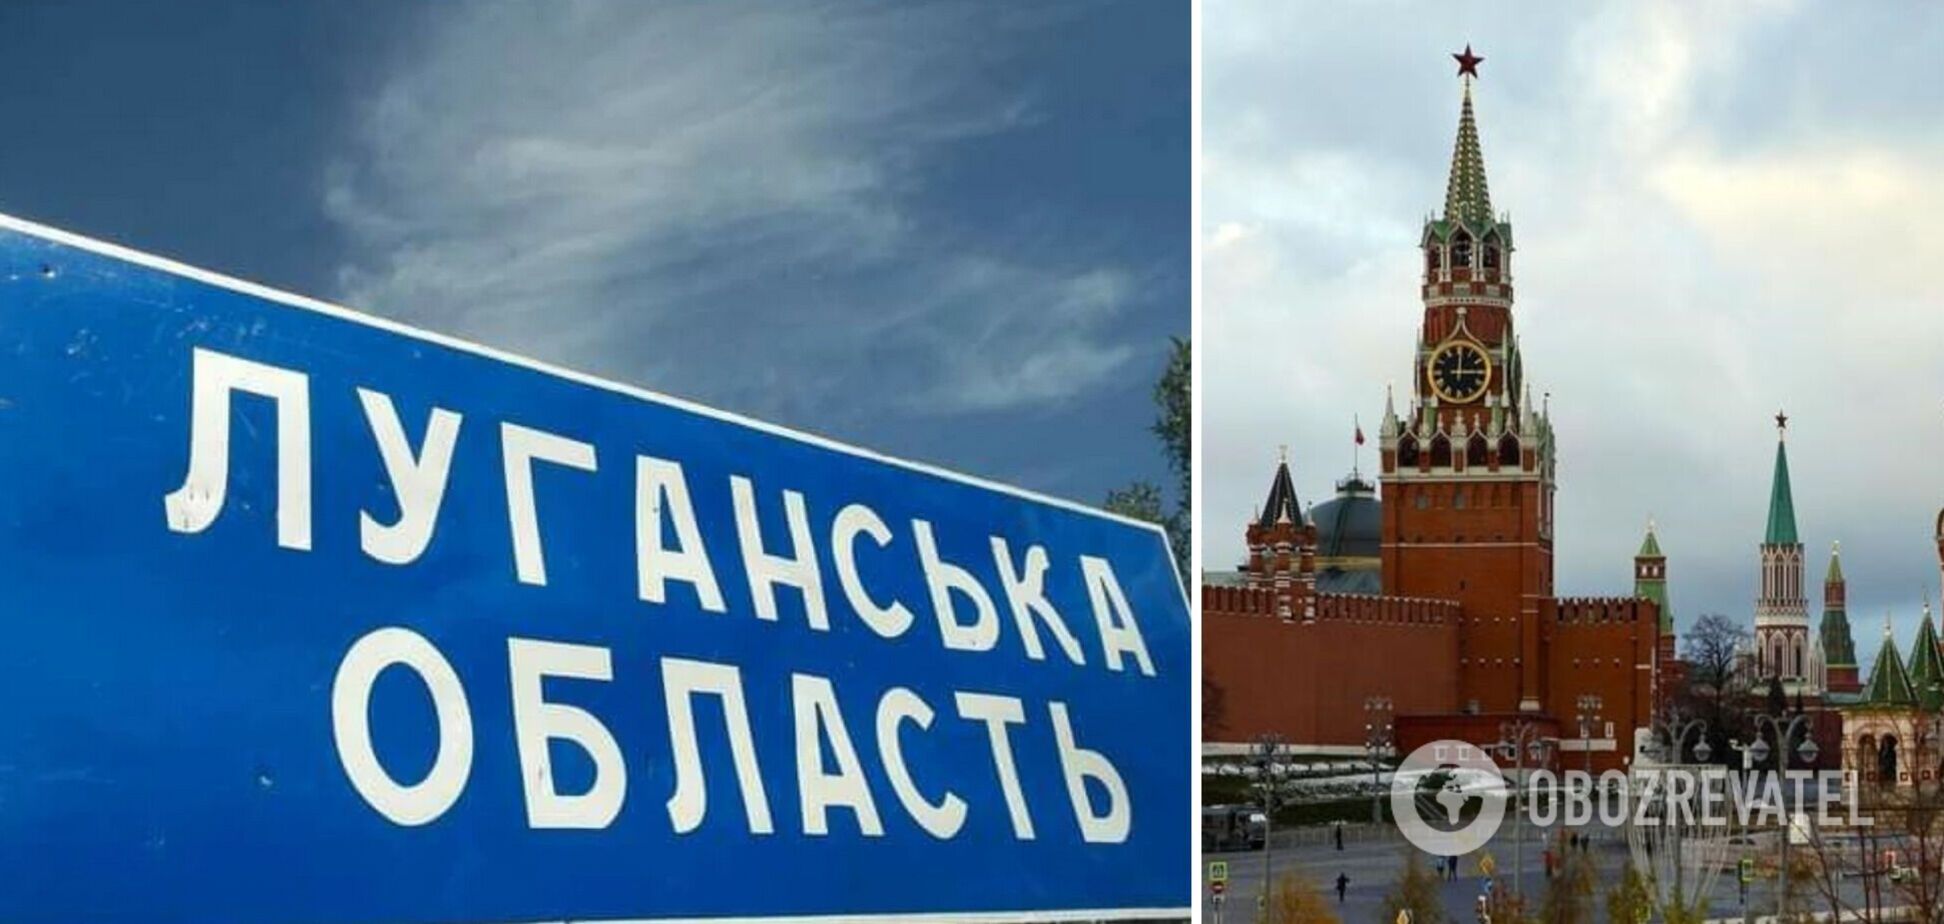 Россия резко повышает коммуналку и устанавливает 'ценовую диктатуру' на захваченной части Луганской области